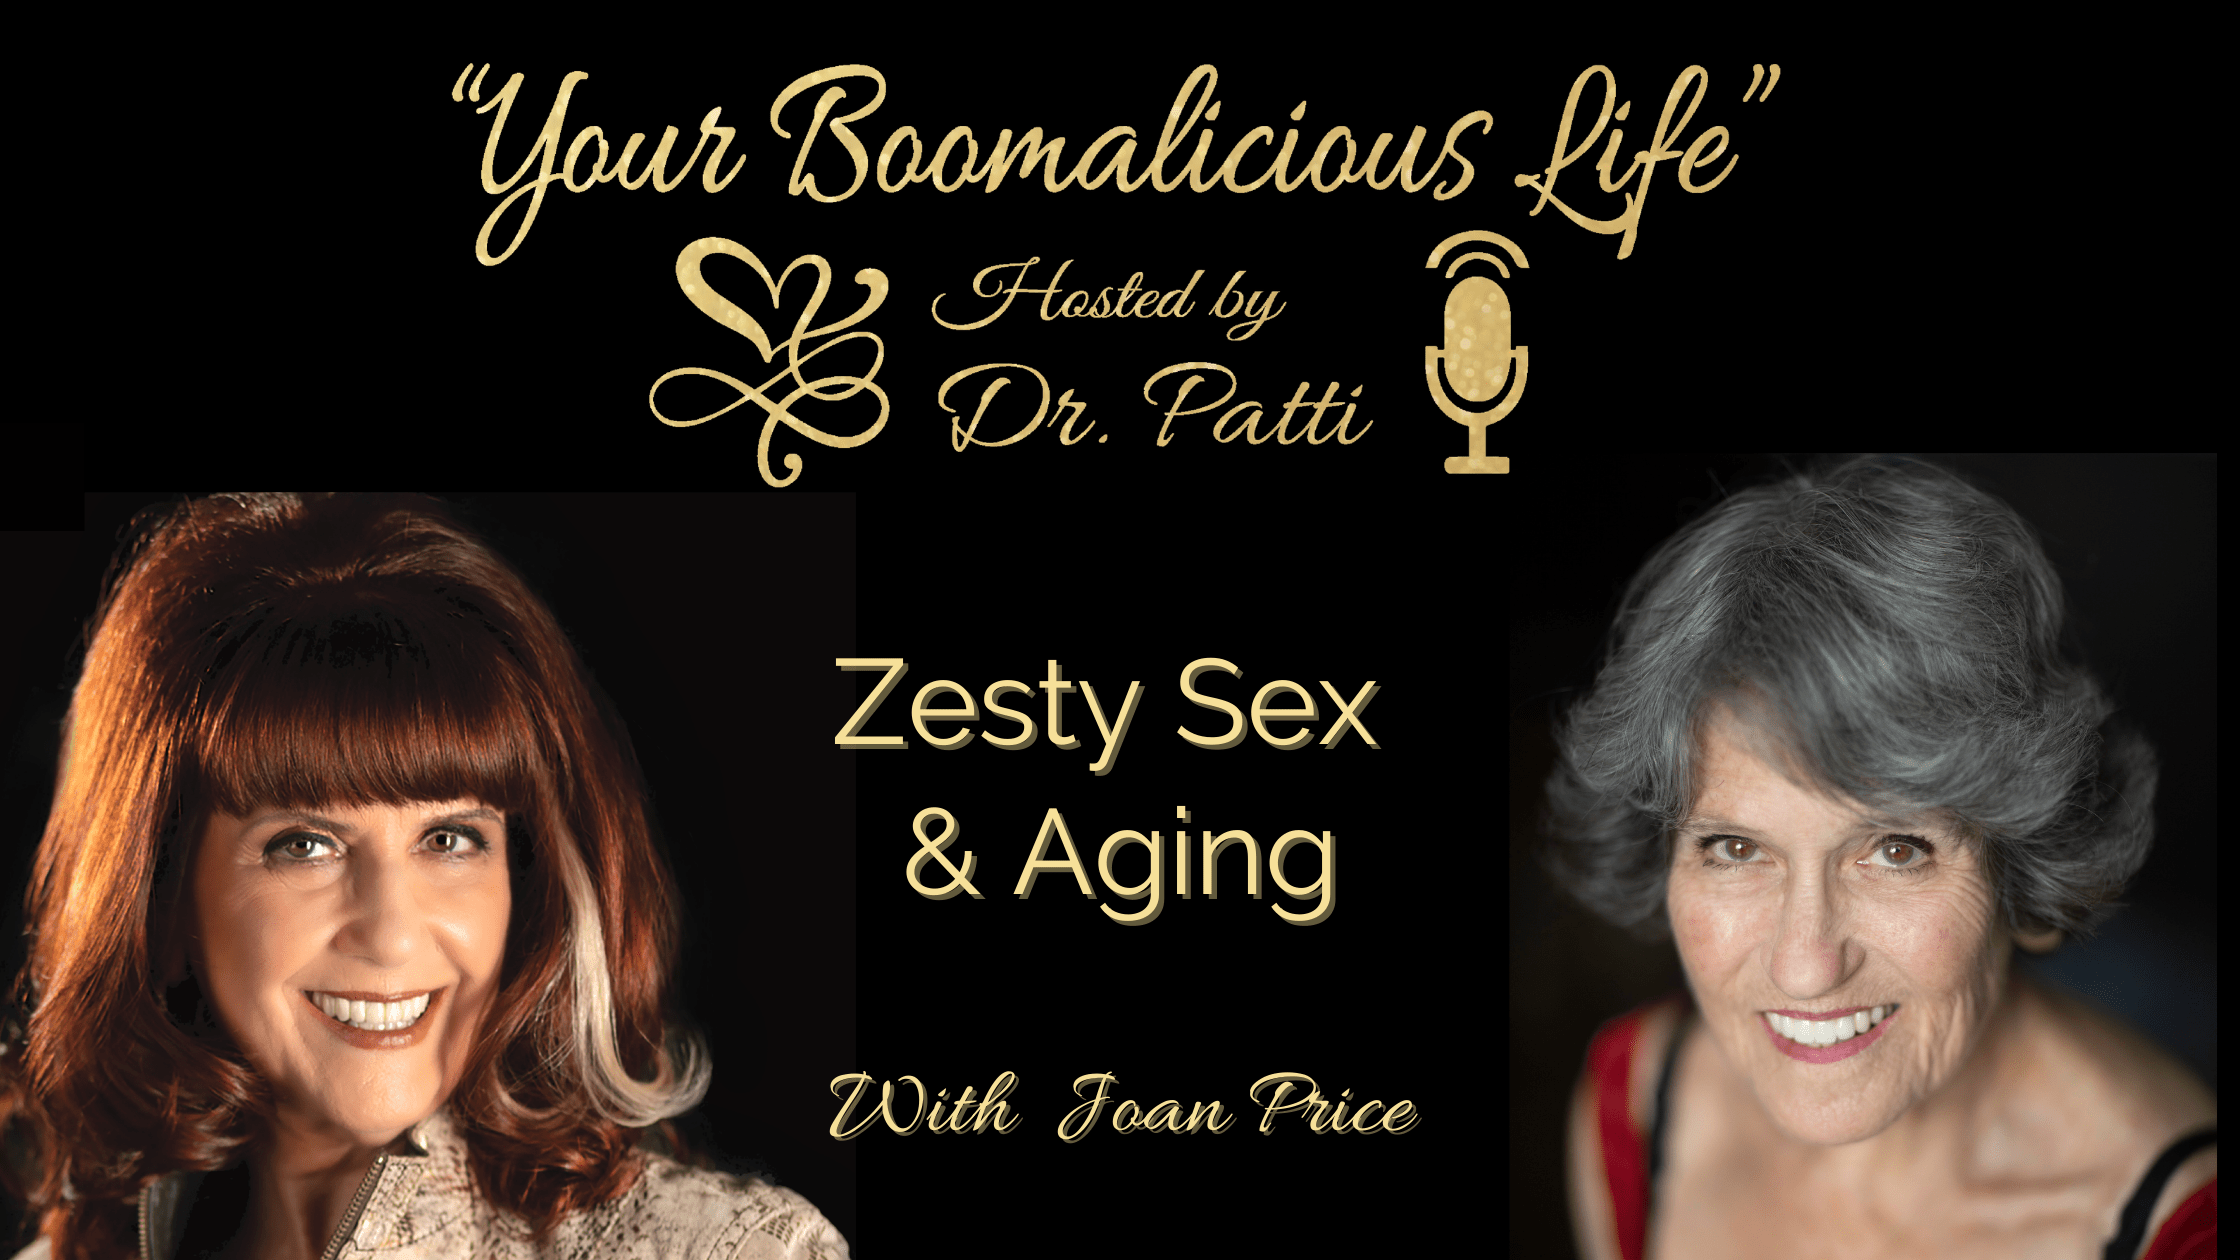 Episode 12 “Zesty Sex & Aging”